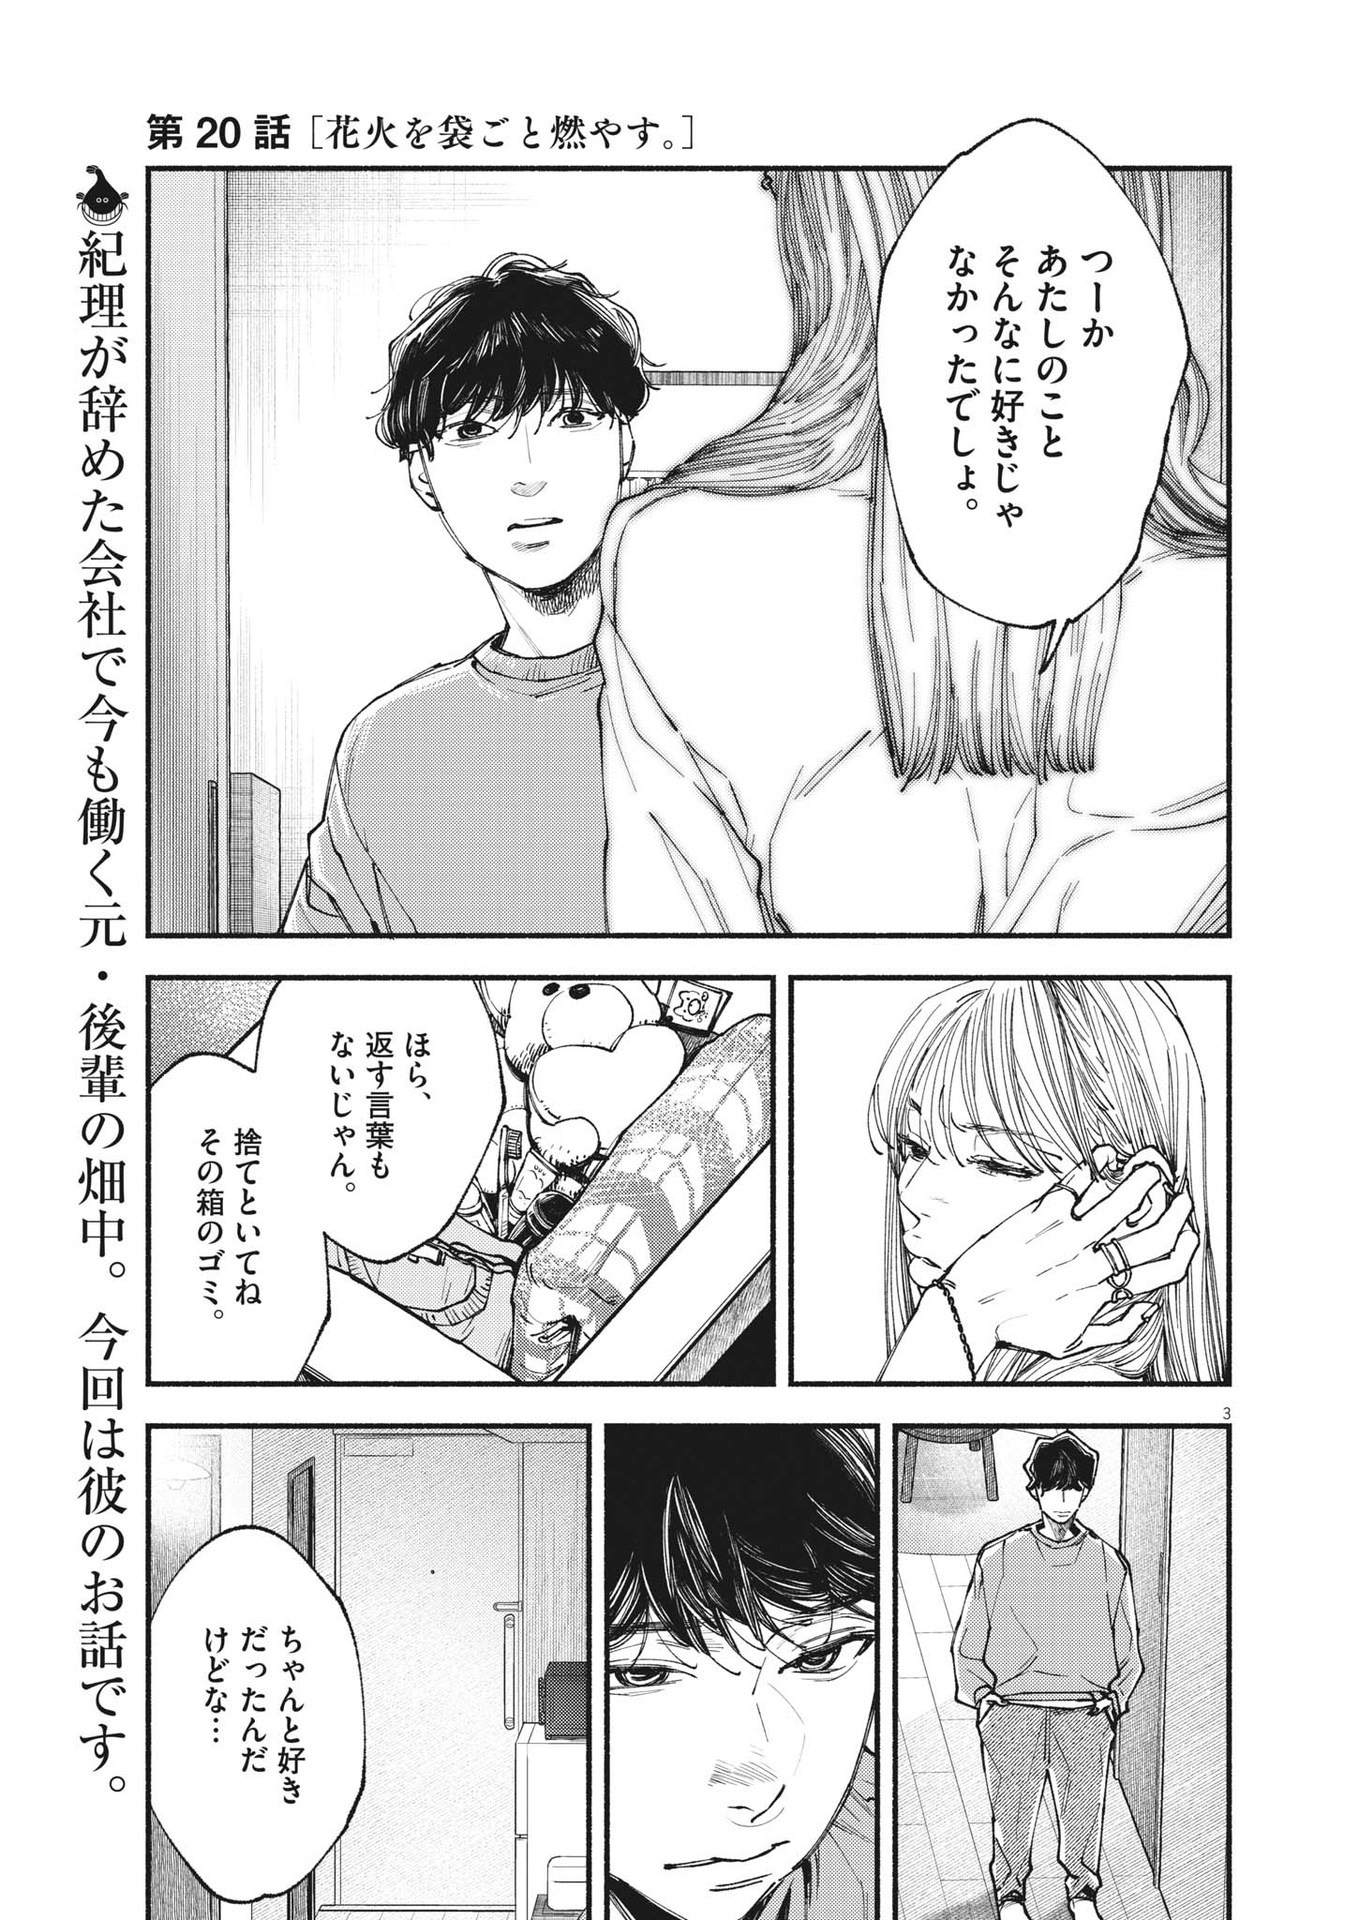 Konoyo wa Tatakau Kachi ga Aru  - Chapter 20 - Page 3